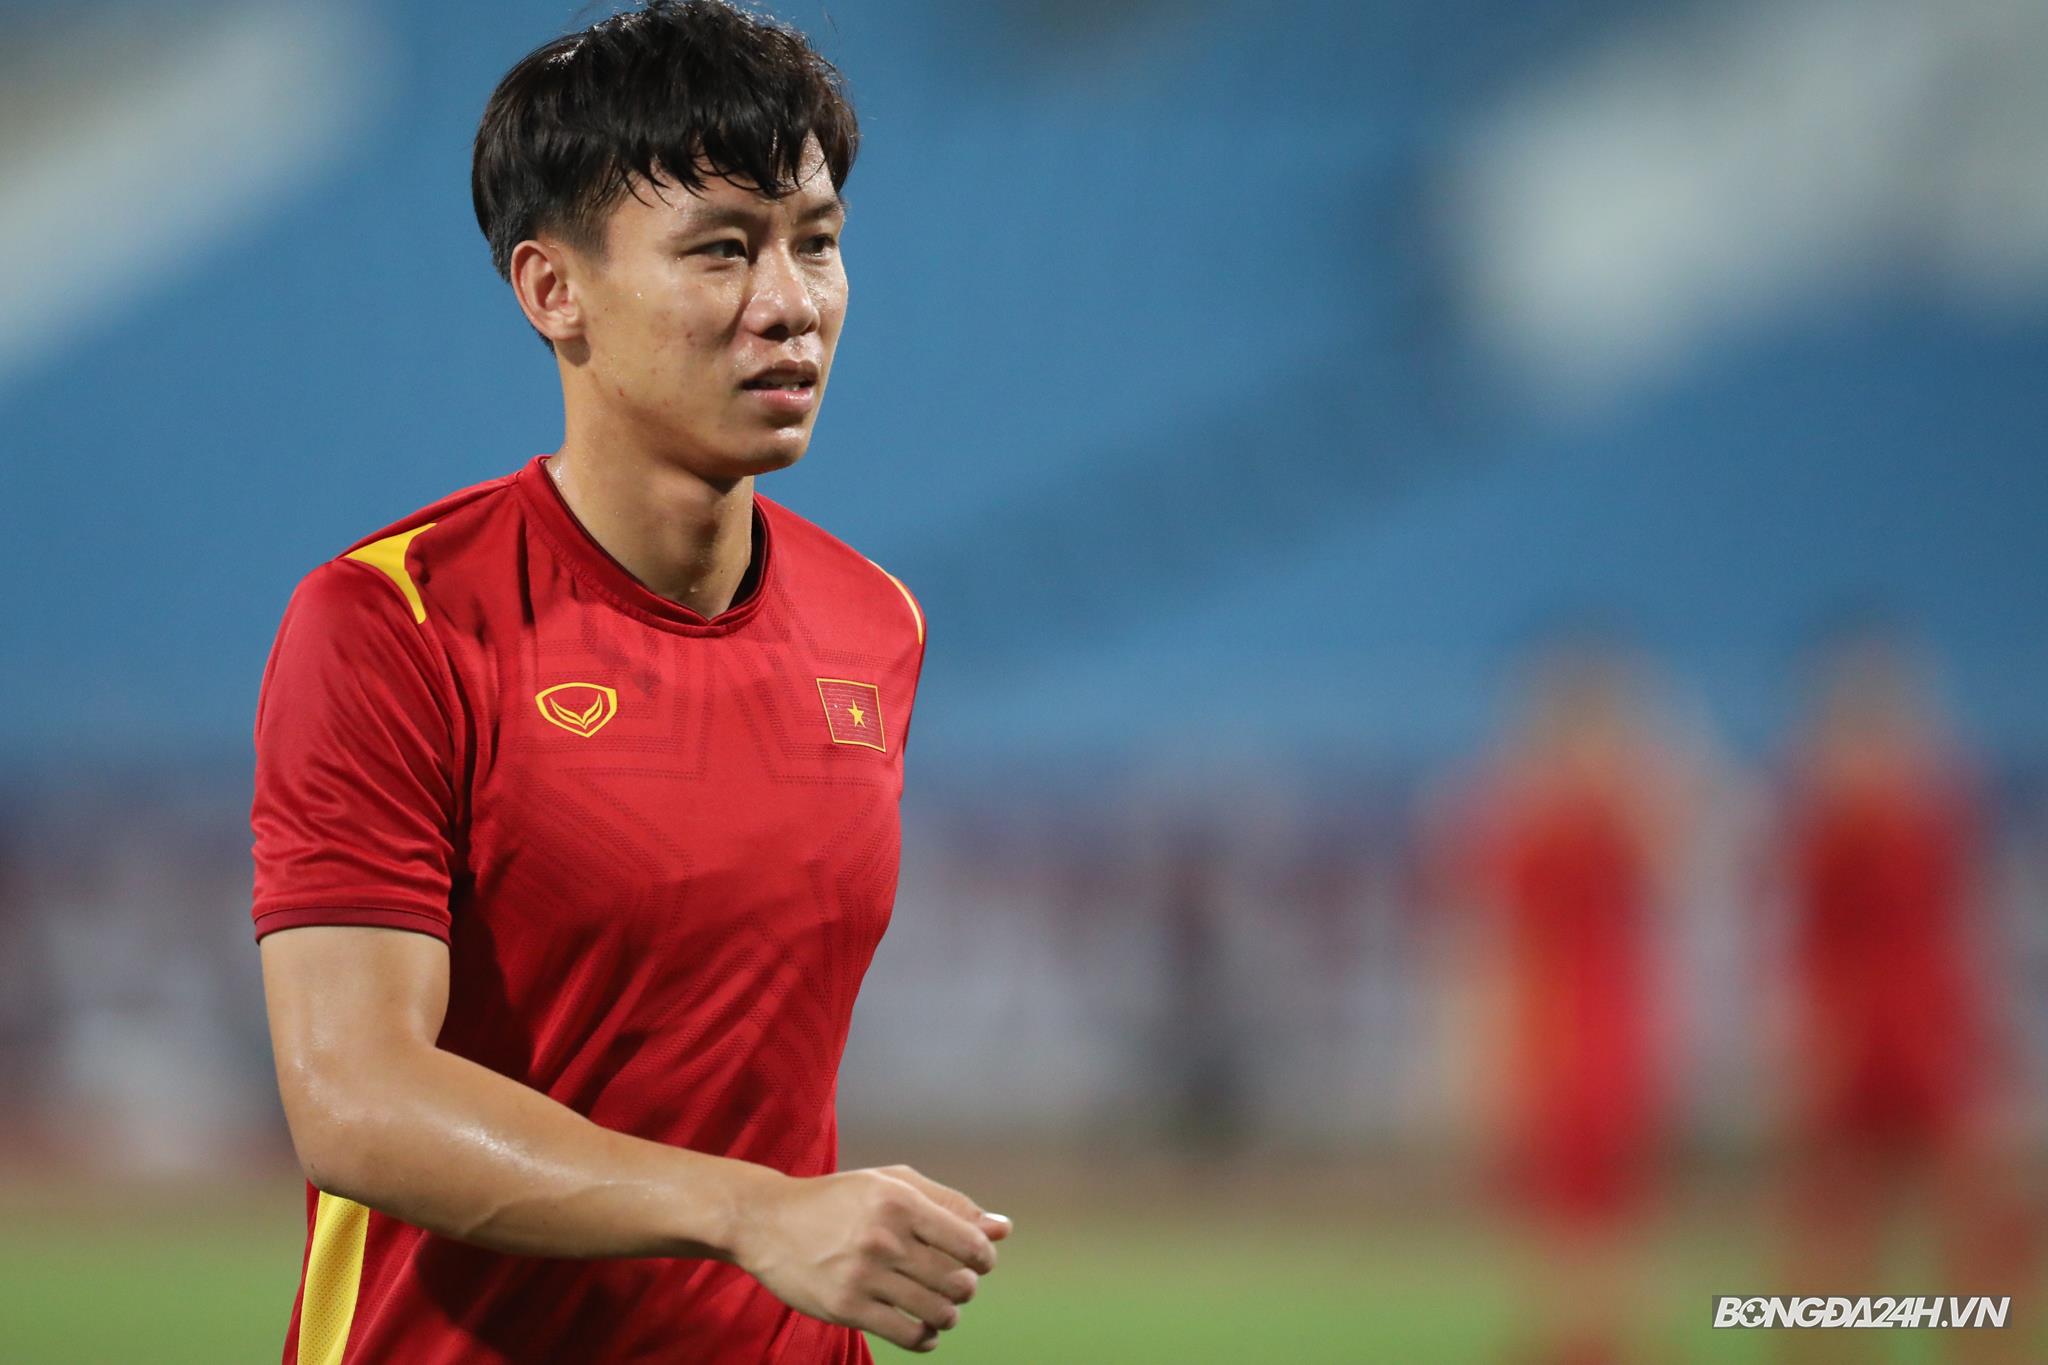 Lót tay: Khám phá những hình ảnh đội tuyển Việt Nam khi thi đấu, đầy bản lĩnh và sự kết nối tốt giữa các cầu thủ. Hãy chú ý đến chi tiết \